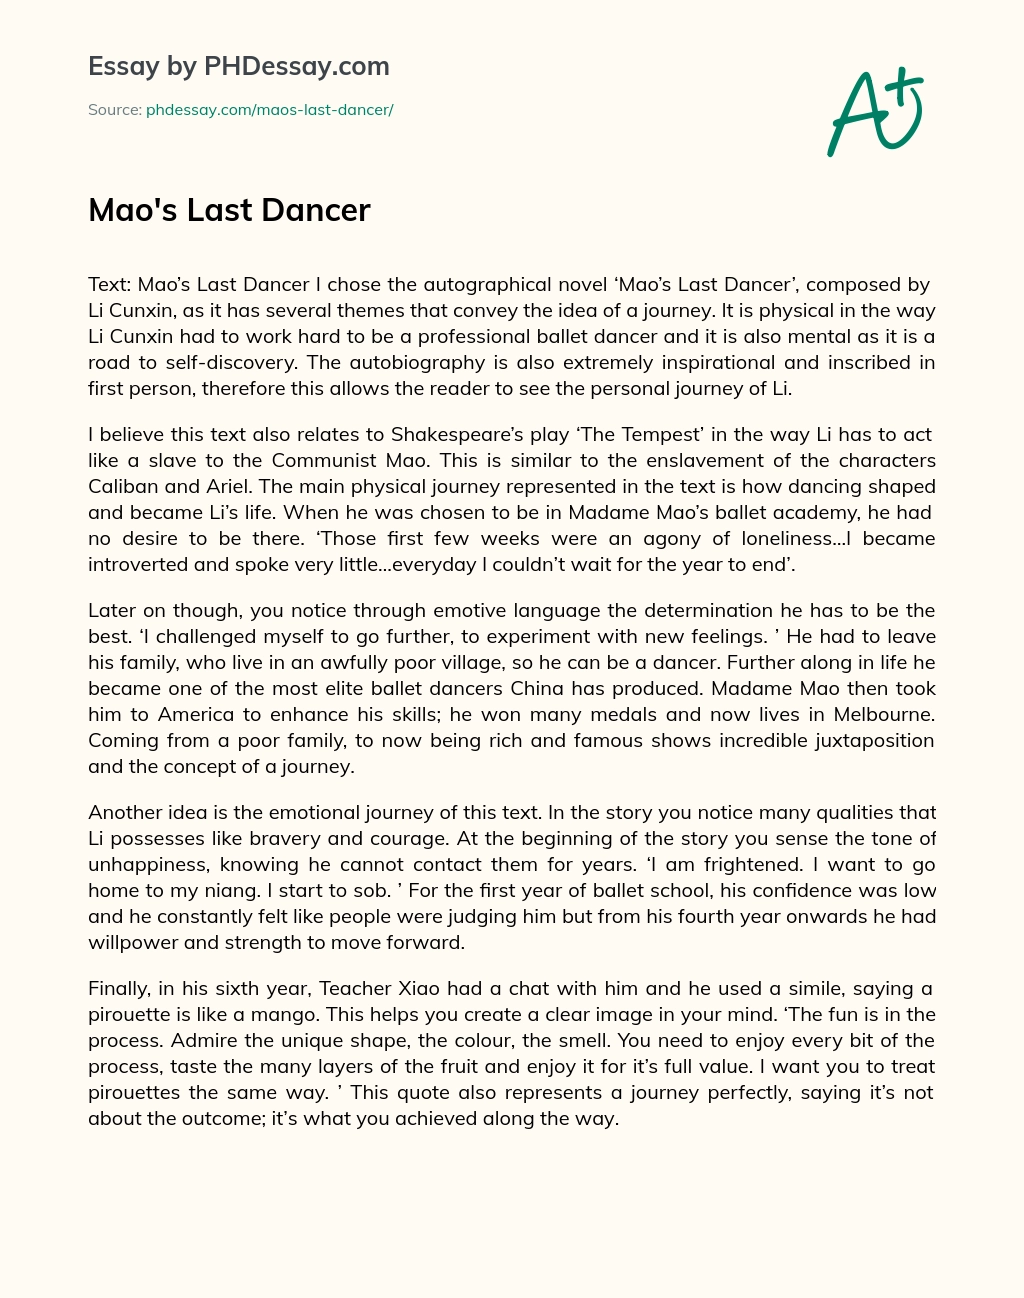 Mao’s Last Dancer essay